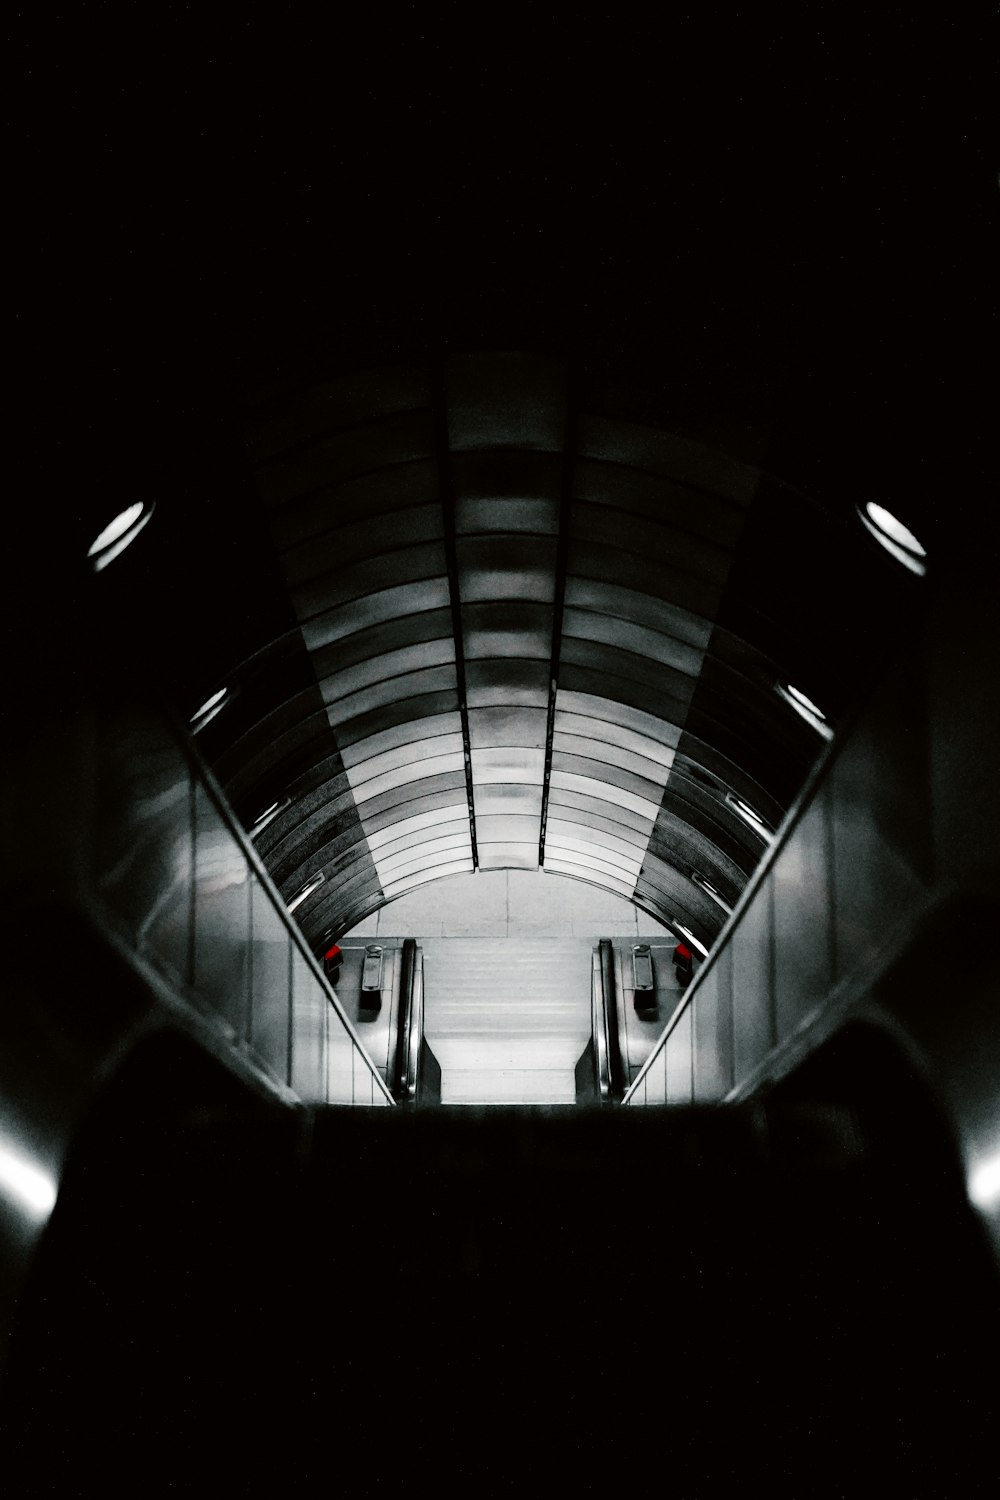 une photo en noir et blanc d’un escalier mécanique